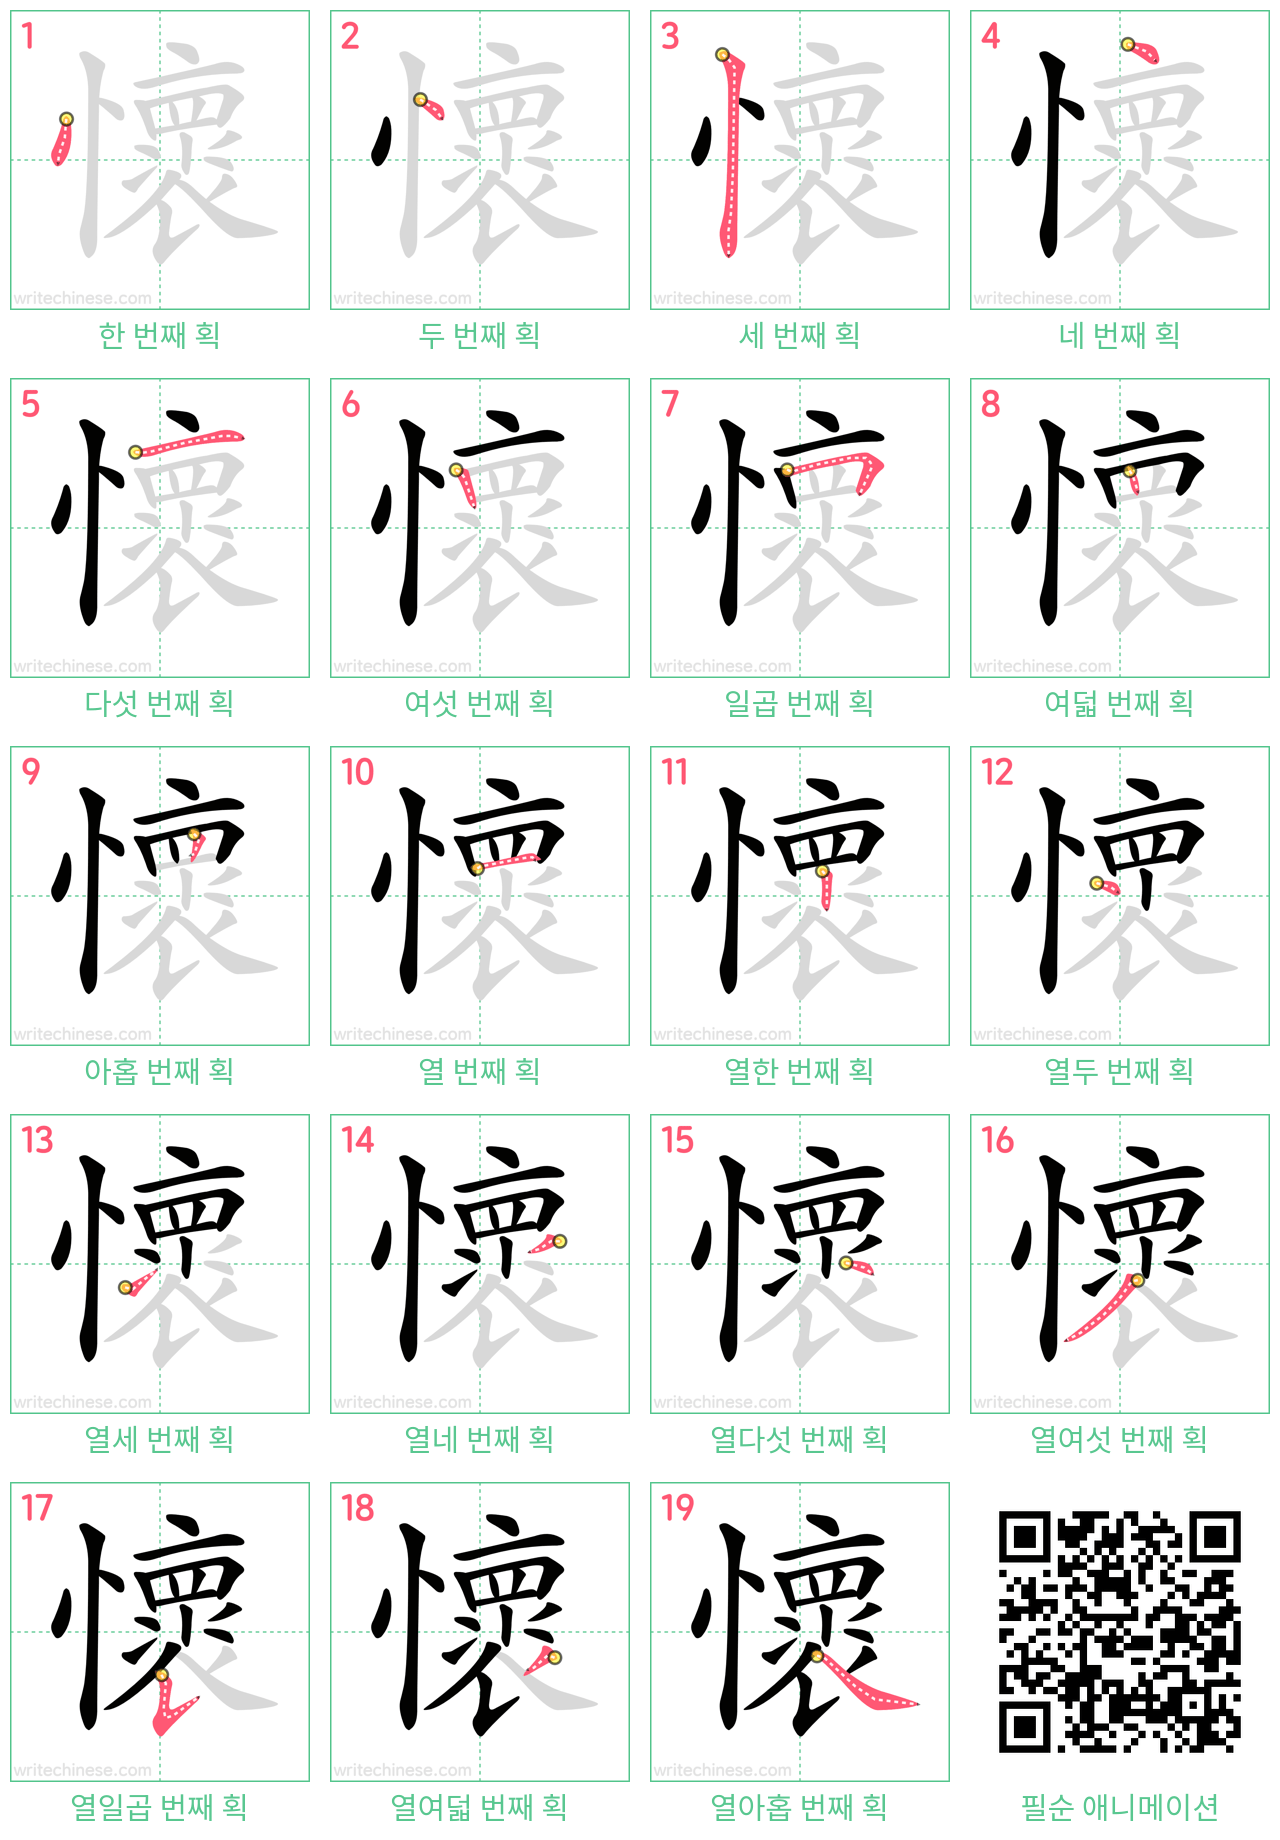 懷 step-by-step stroke order diagrams